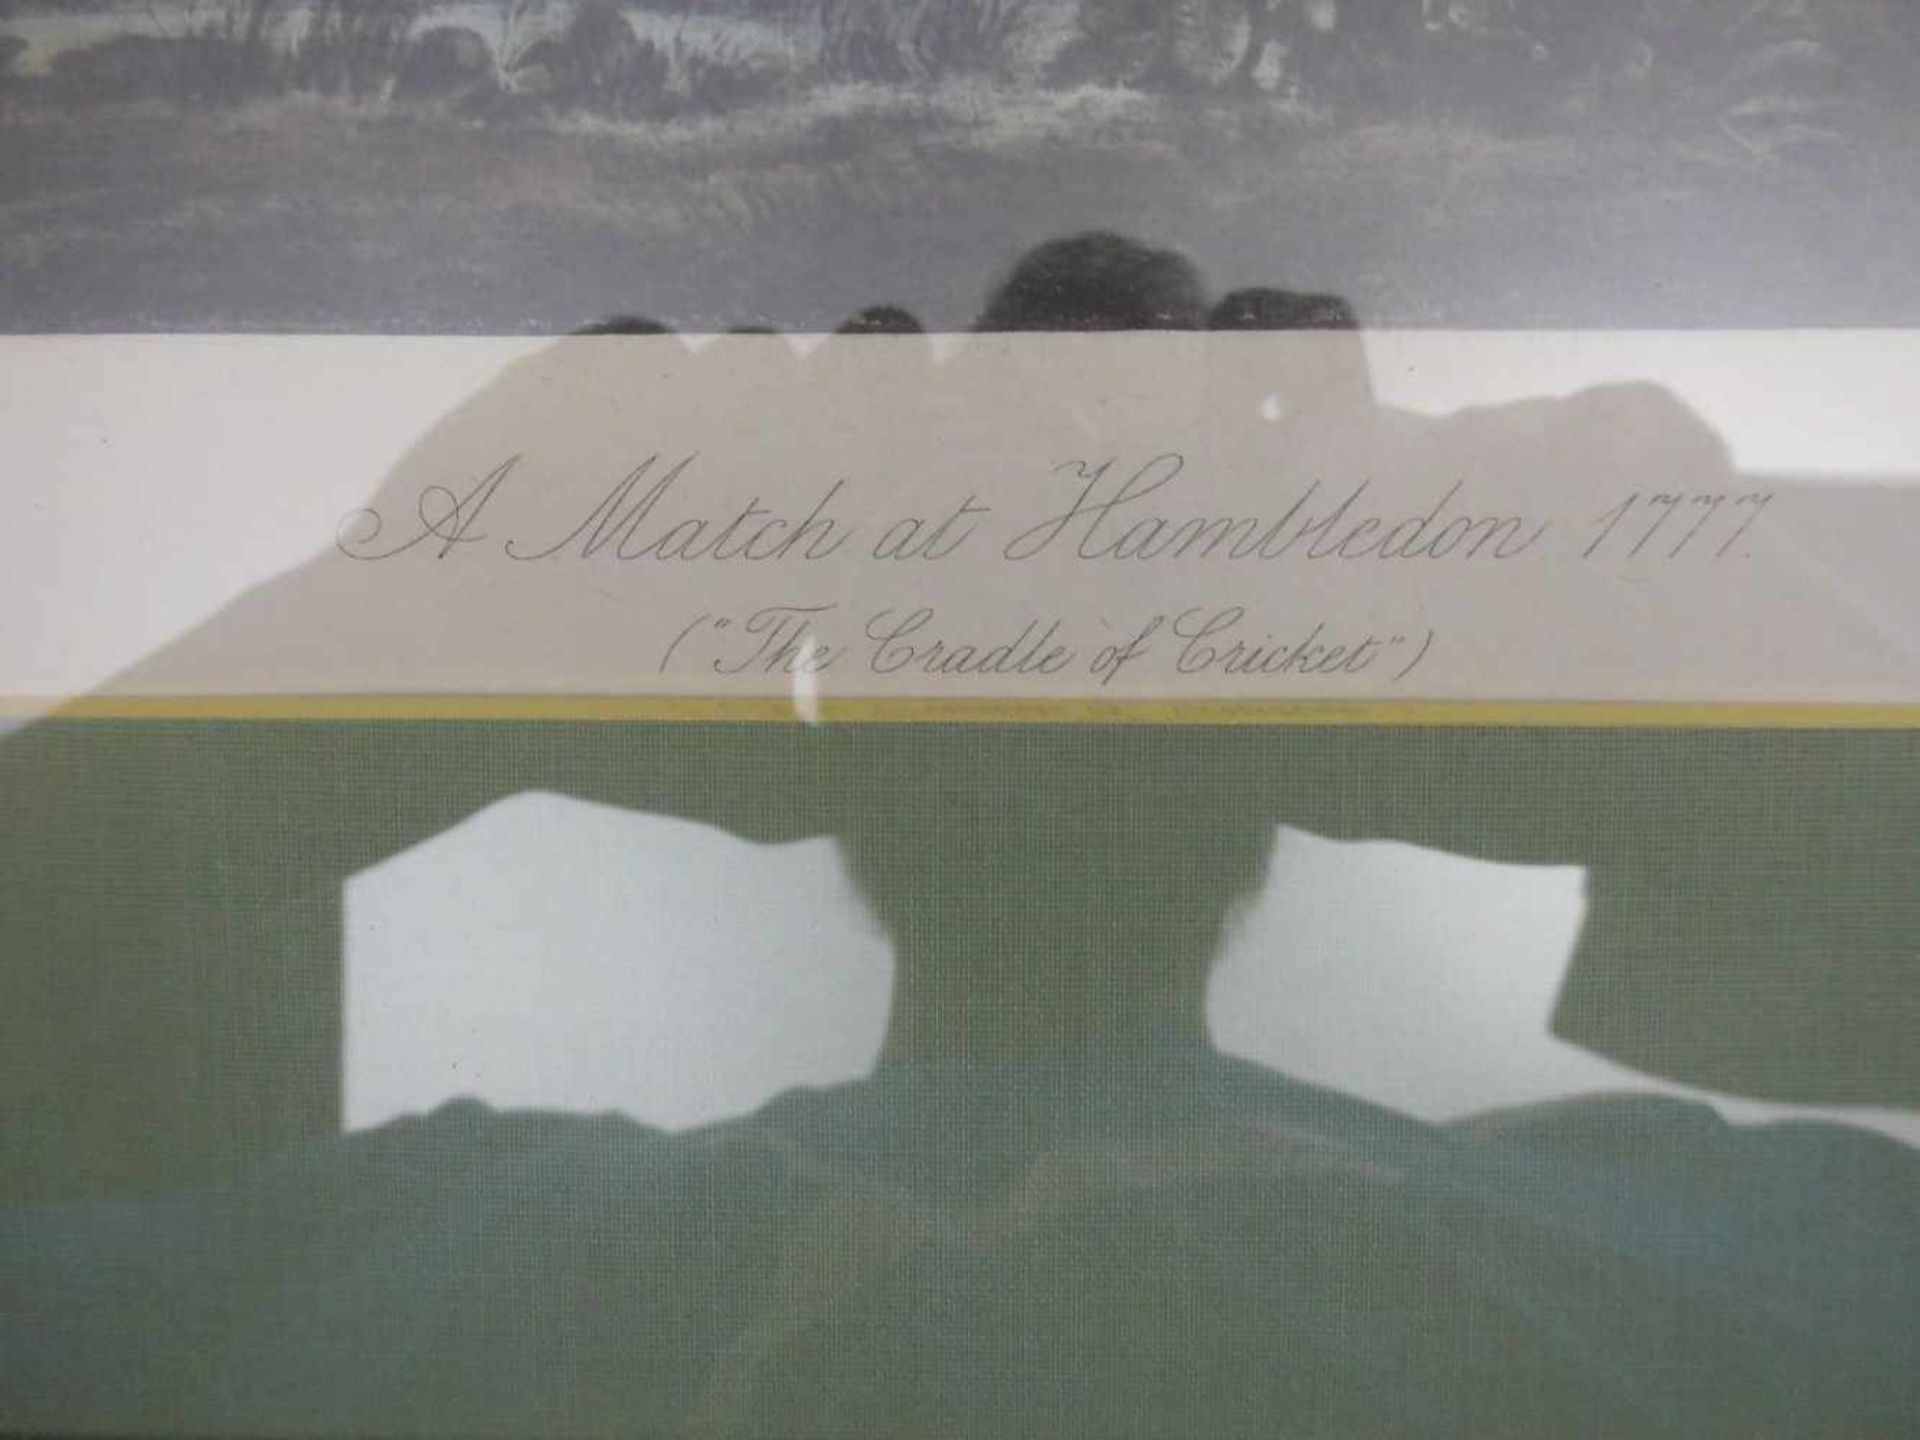 GRAFIK ZUM KRICKET-SPIEL: "A MATCH AT HAMBLEDON 1777 ("The Craddle of Cricket"), Farbdruck, " - Bild 2 aus 3